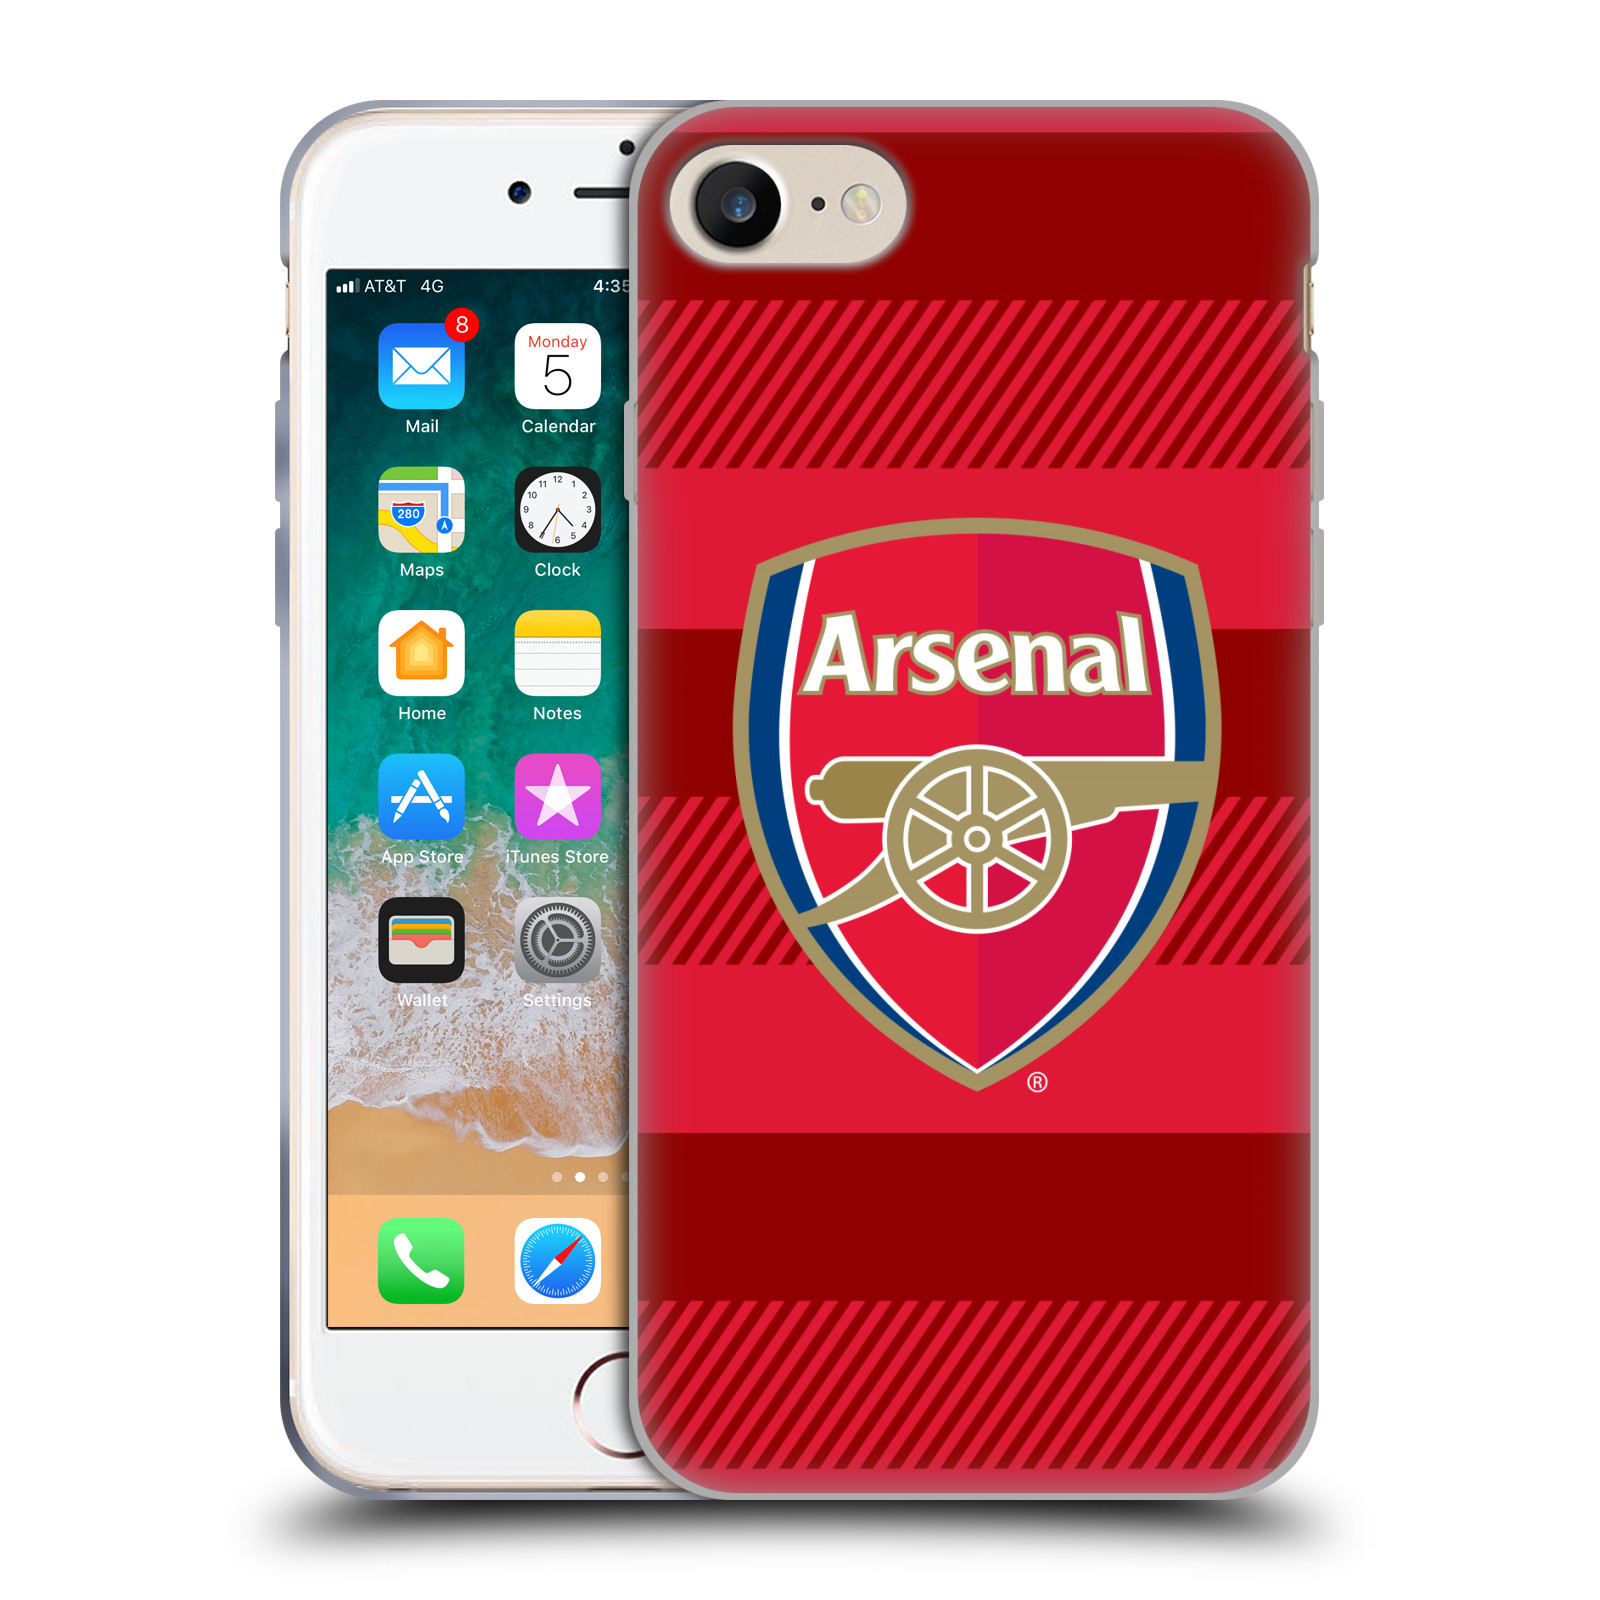 Silikonové pouzdro na mobil Apple iPhone 8 - Head Case - Arsenal FC - Logo s pruhy (Silikonový kryt či obal na mobilní telefon s motivem klubu Arsenal FC - Logo s pruhy pro Apple iPhone 8)